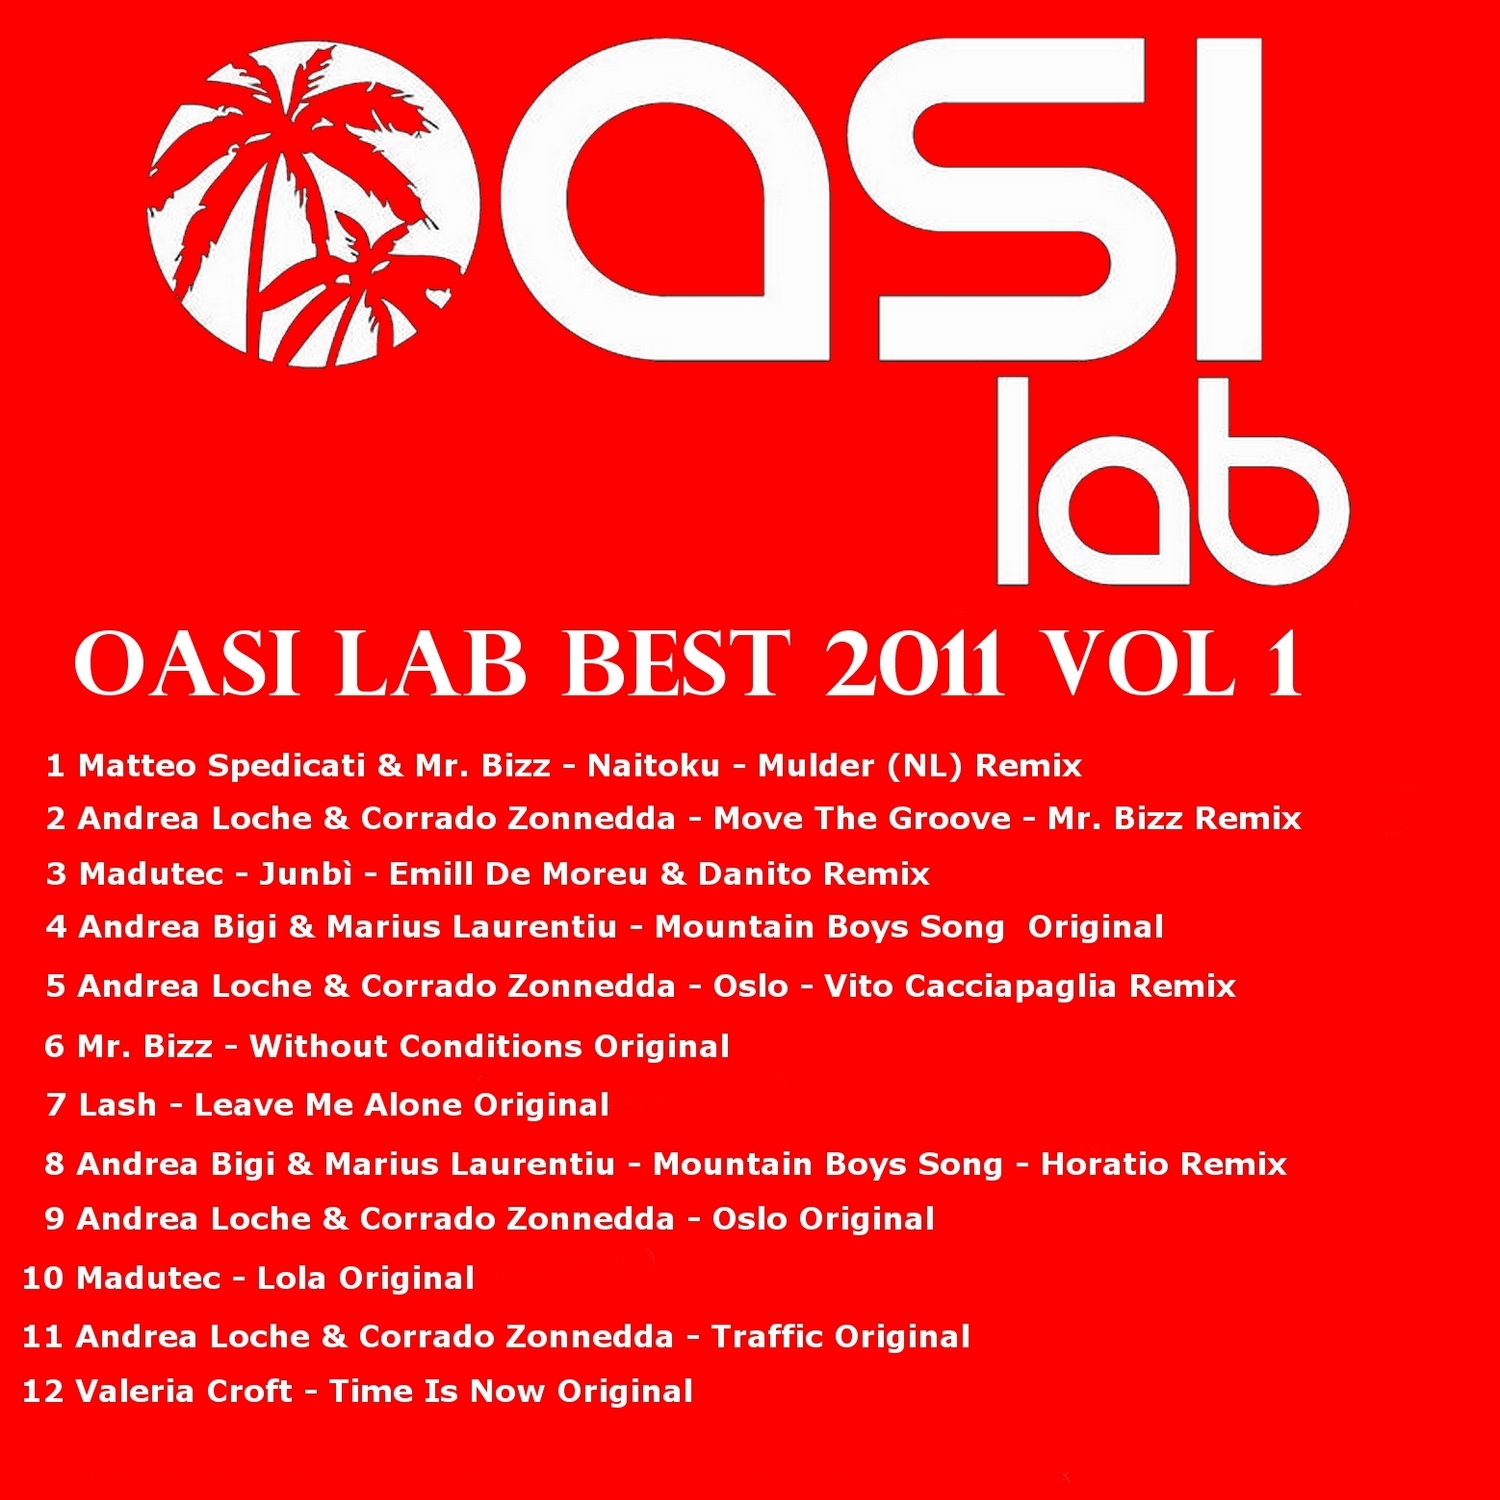 Oasi Lab Best 2011, Vol. 1